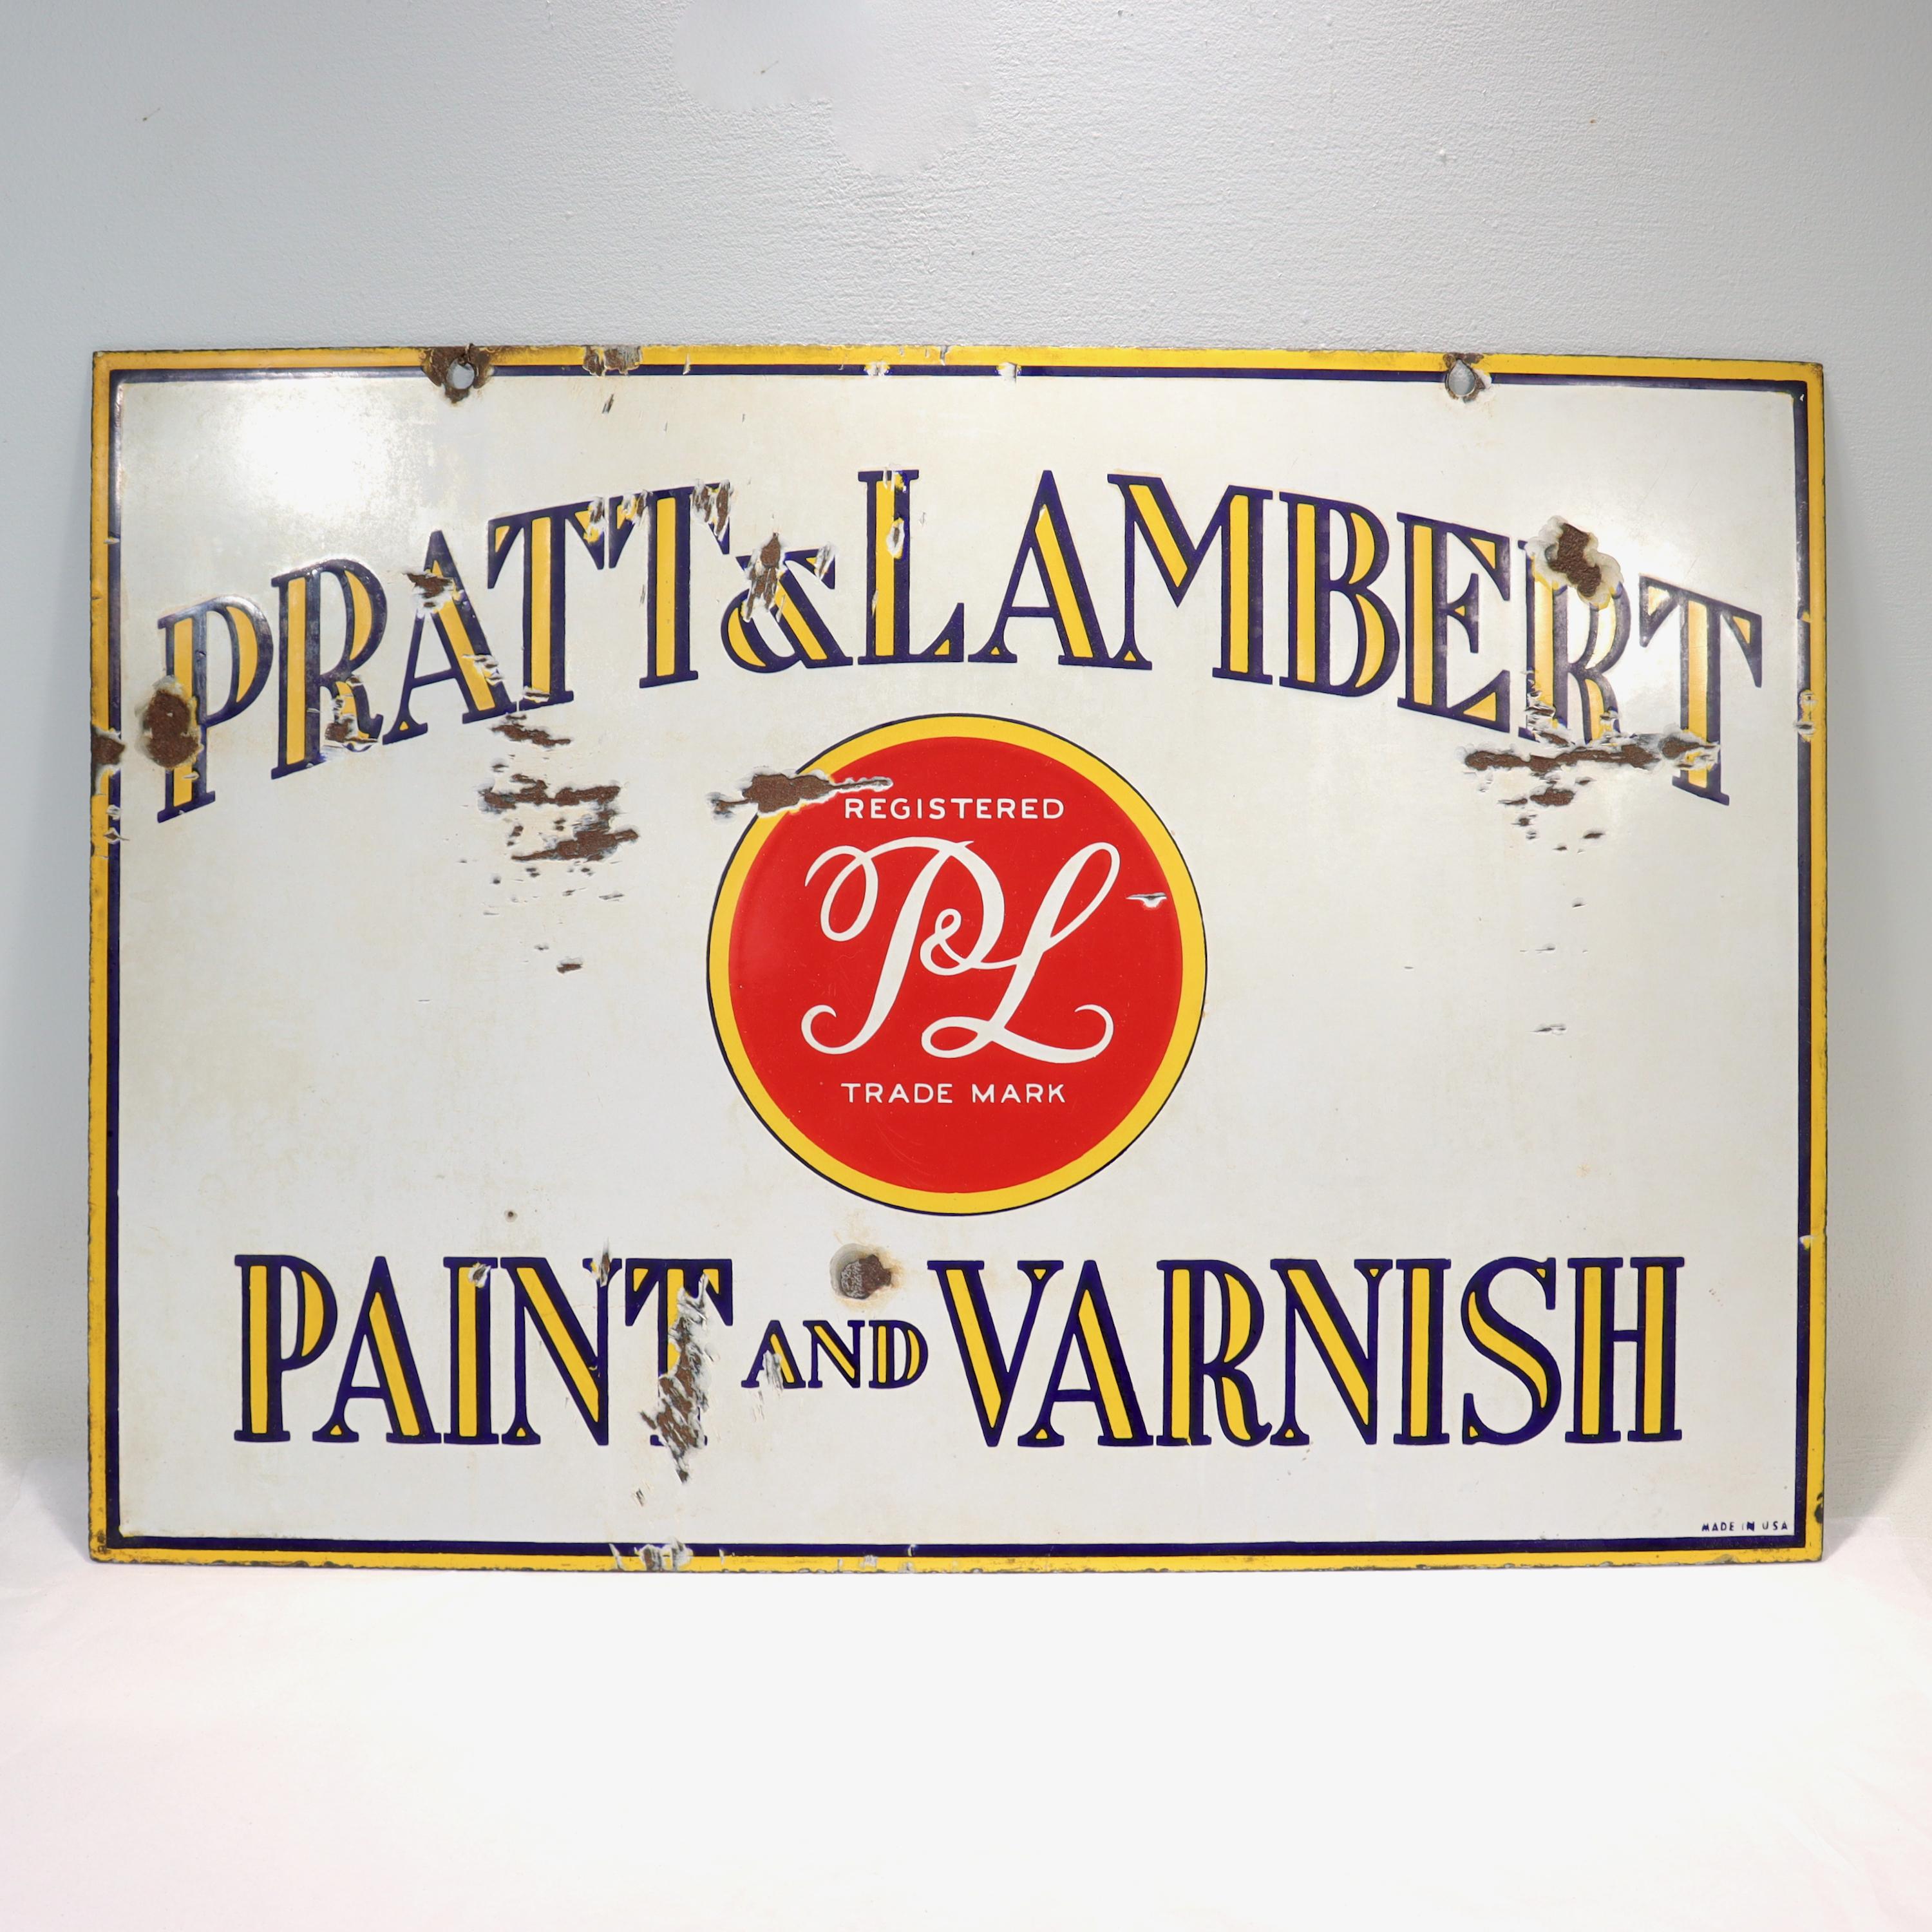 Ein schönes doppelseitiges Emaille-Werbeschild im Vintage-Stil.

Für das berühmte Farbenunternehmen Pratt & Lambert. 

Mit gelbem und rotem Dekor auf weißem Grund.

Der Text lautet: pRATT & LAMBERT PAINT AND VARNISH

Einfach ein tolles